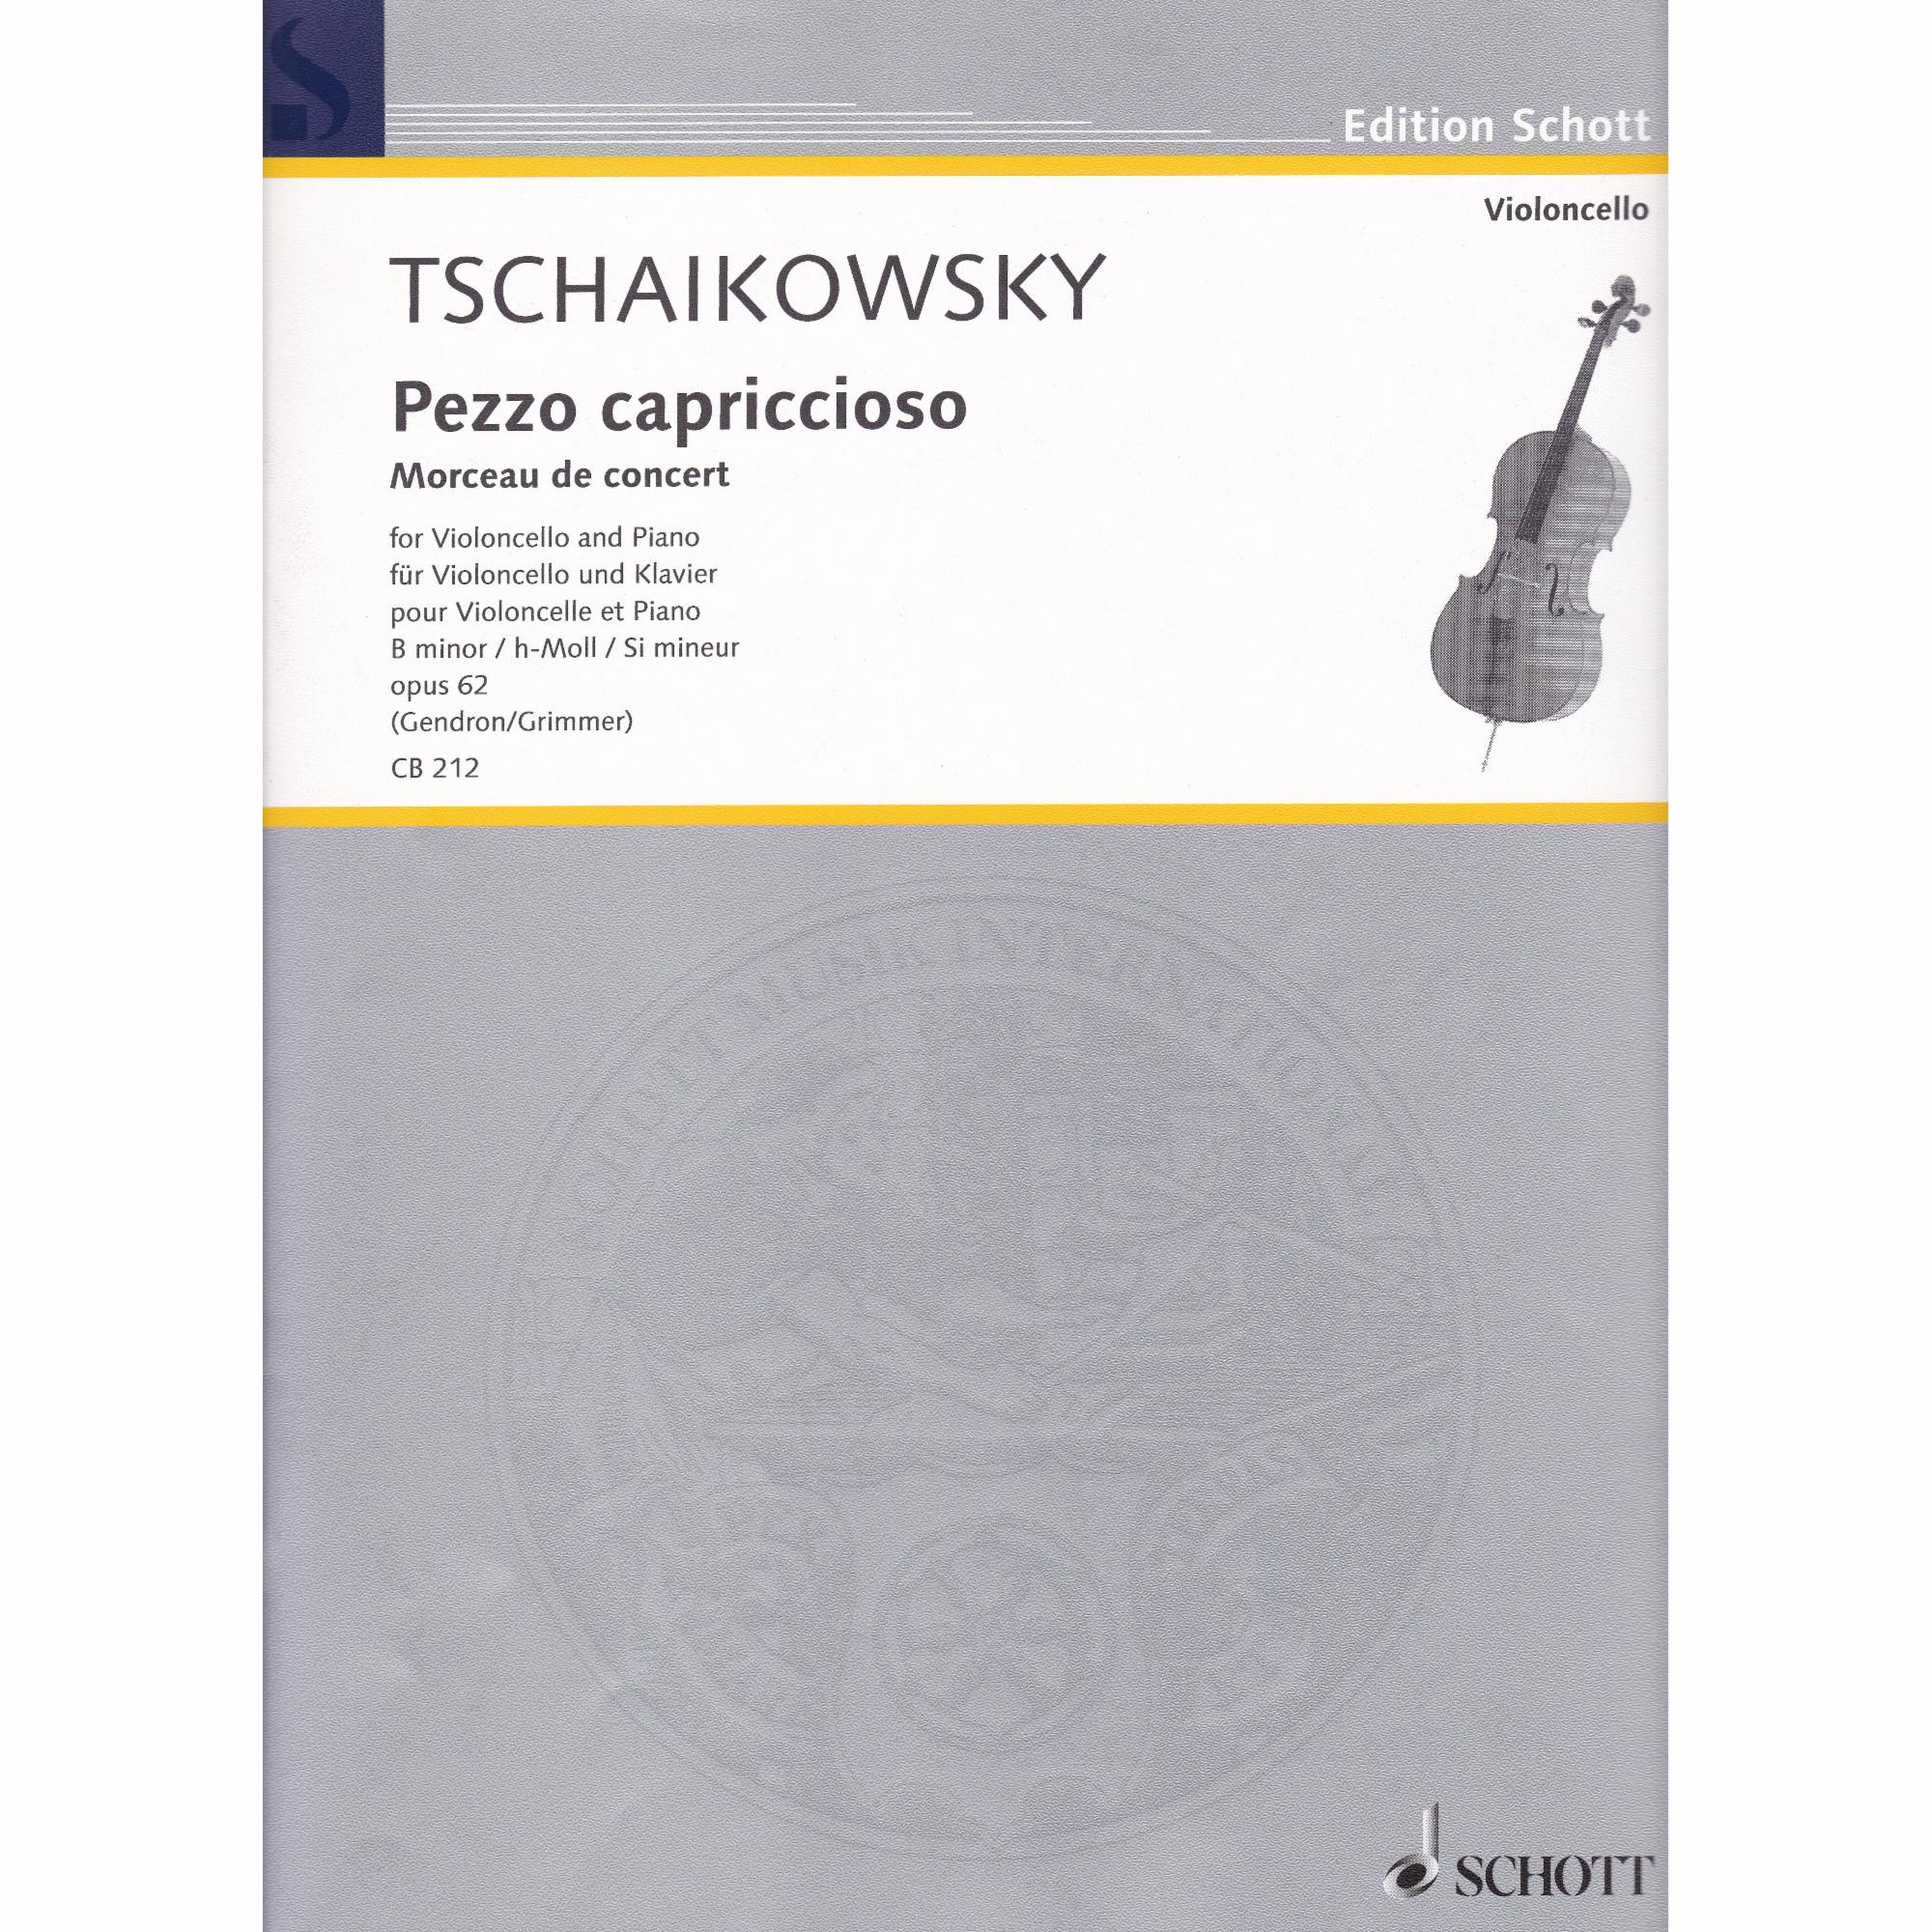 Pezzo Capriccioso in B minor for Cello and Piano, Op. 62